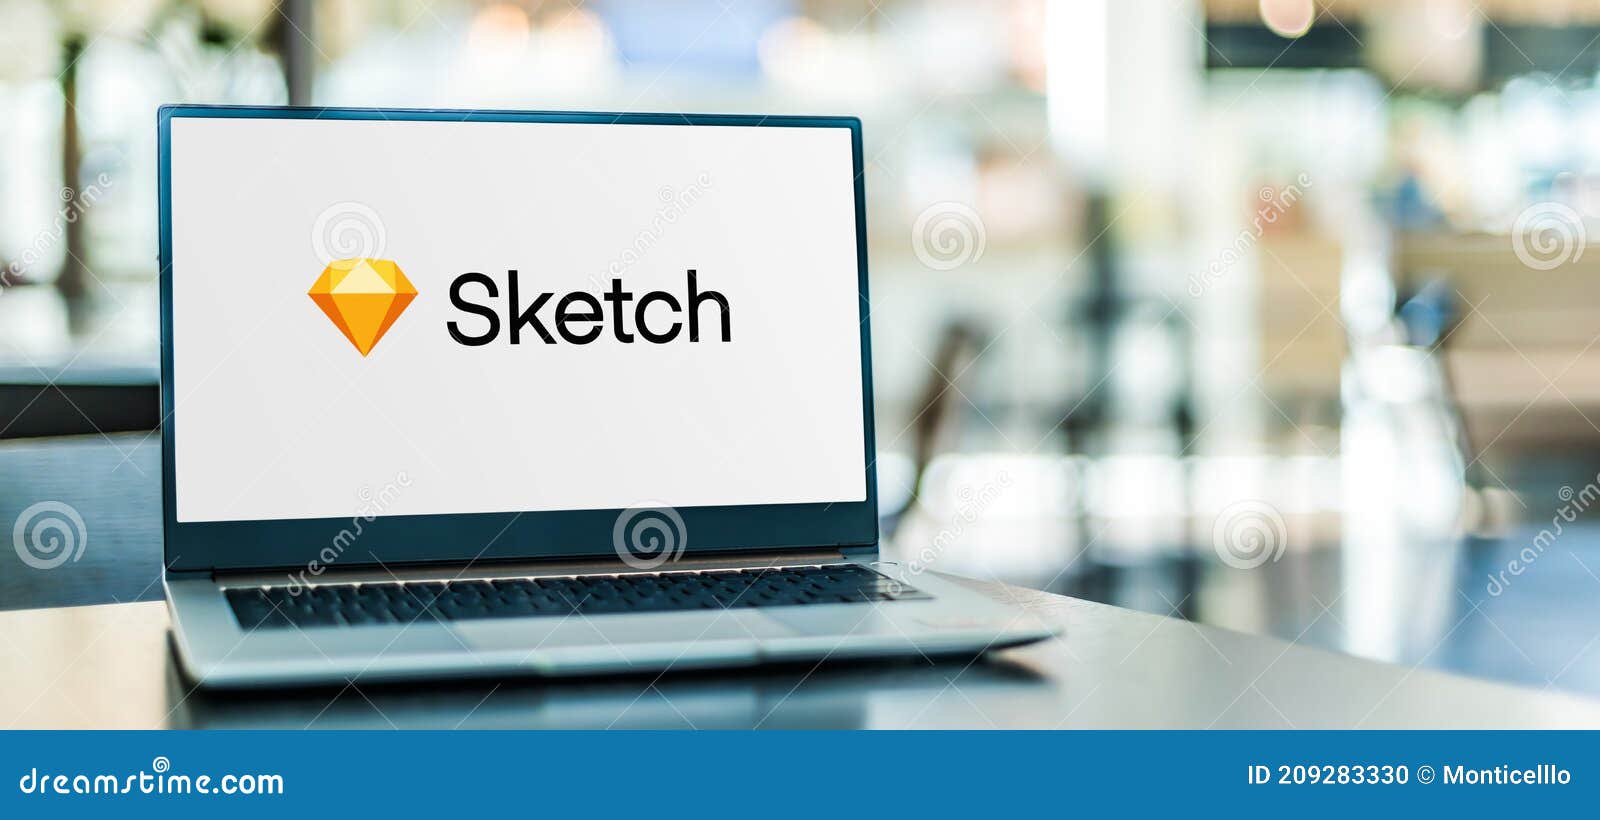 Sketch Plugins - Download Hundreds of Plugins · Sketch